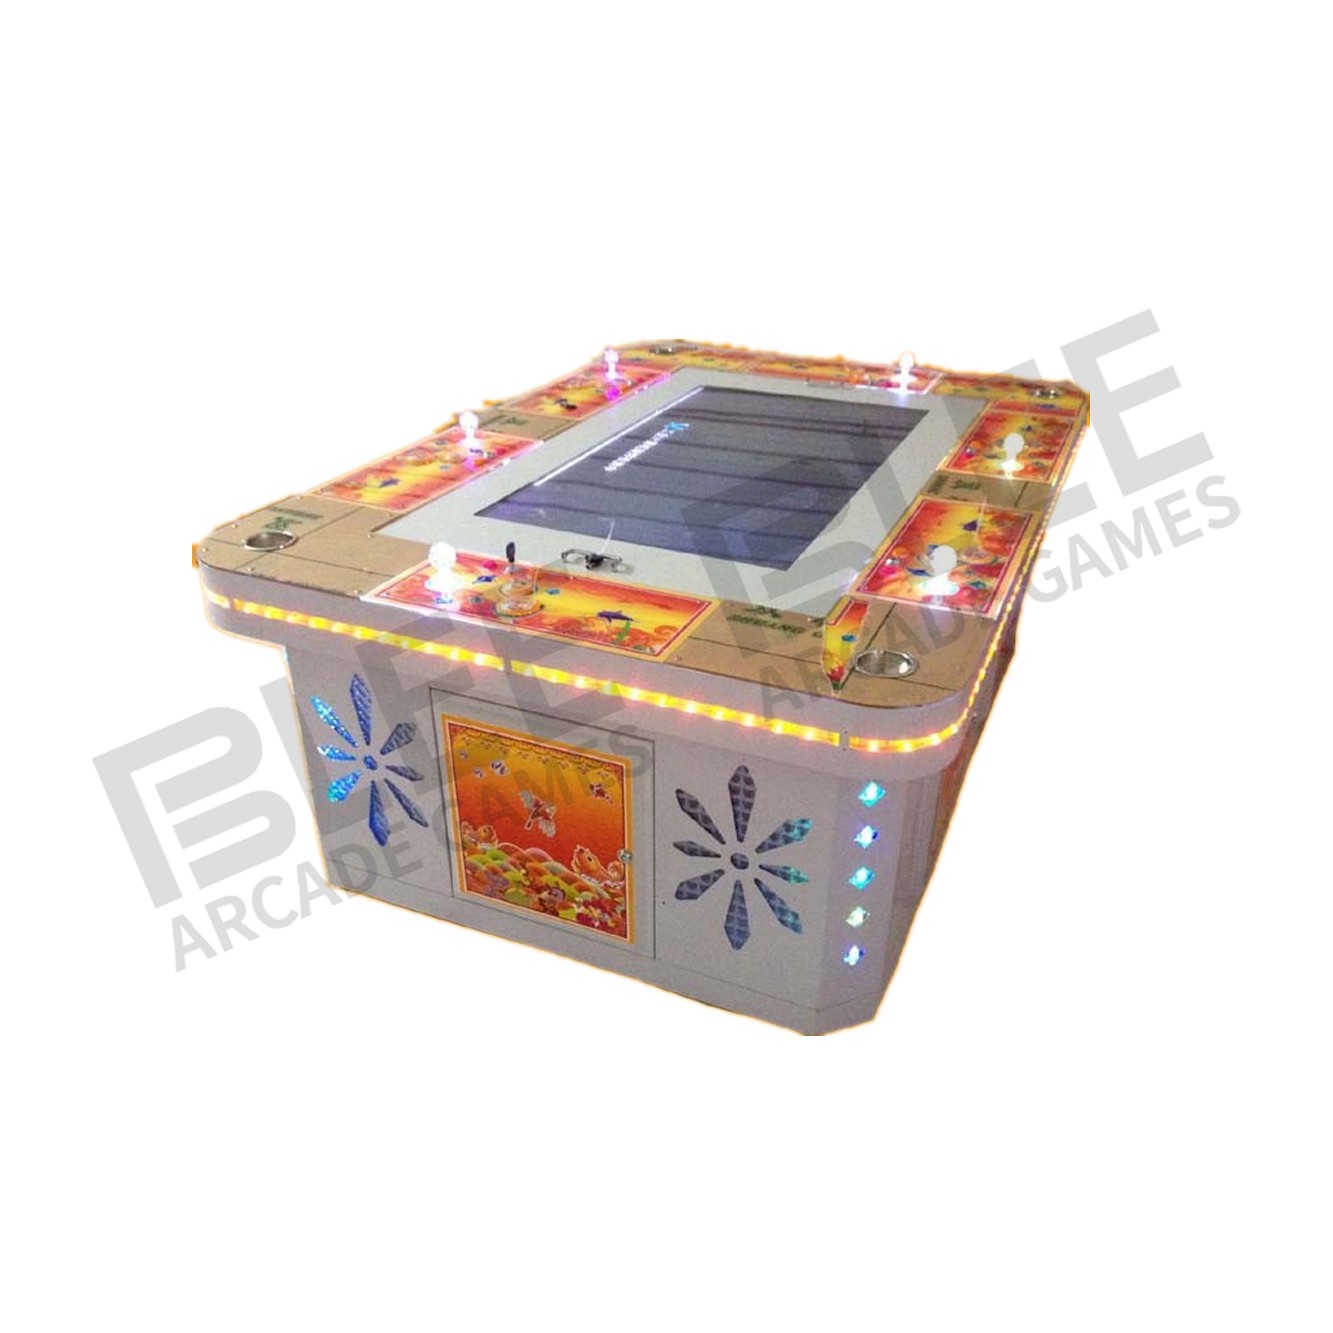 BLEE-Find Shooting Arcade Machines For Sale Desktop Arcade Machine